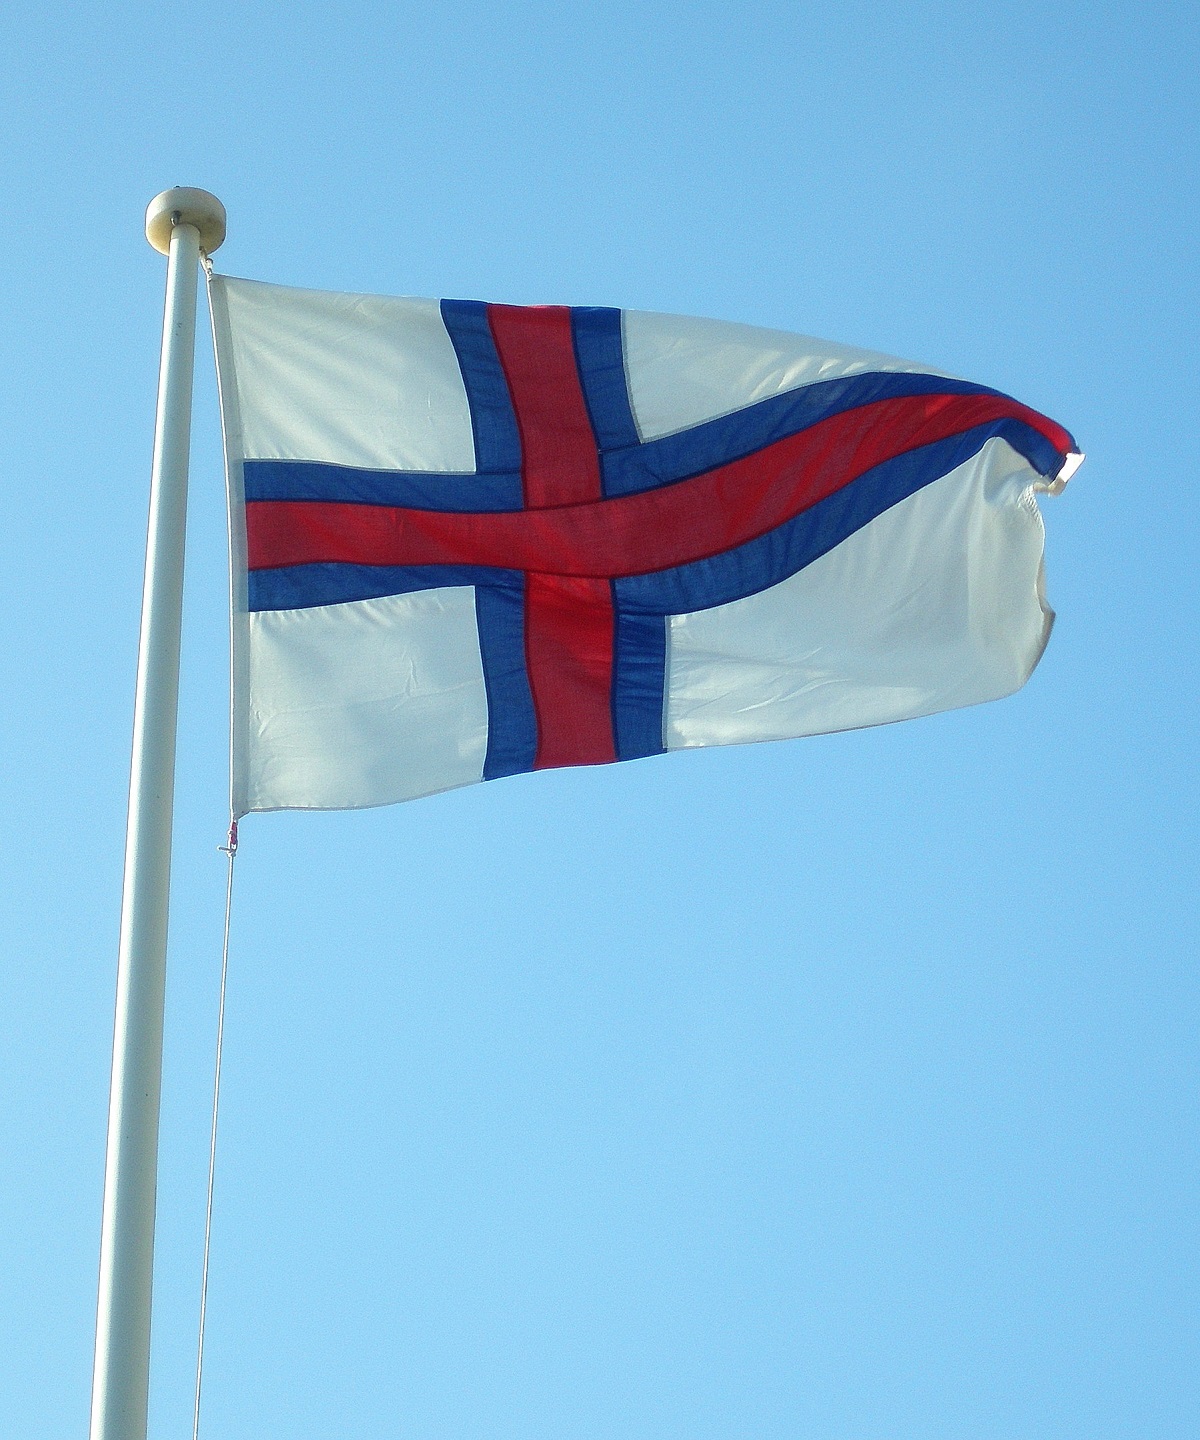 Wapperende vlag op de Faroer met een strak blauwe lucht.